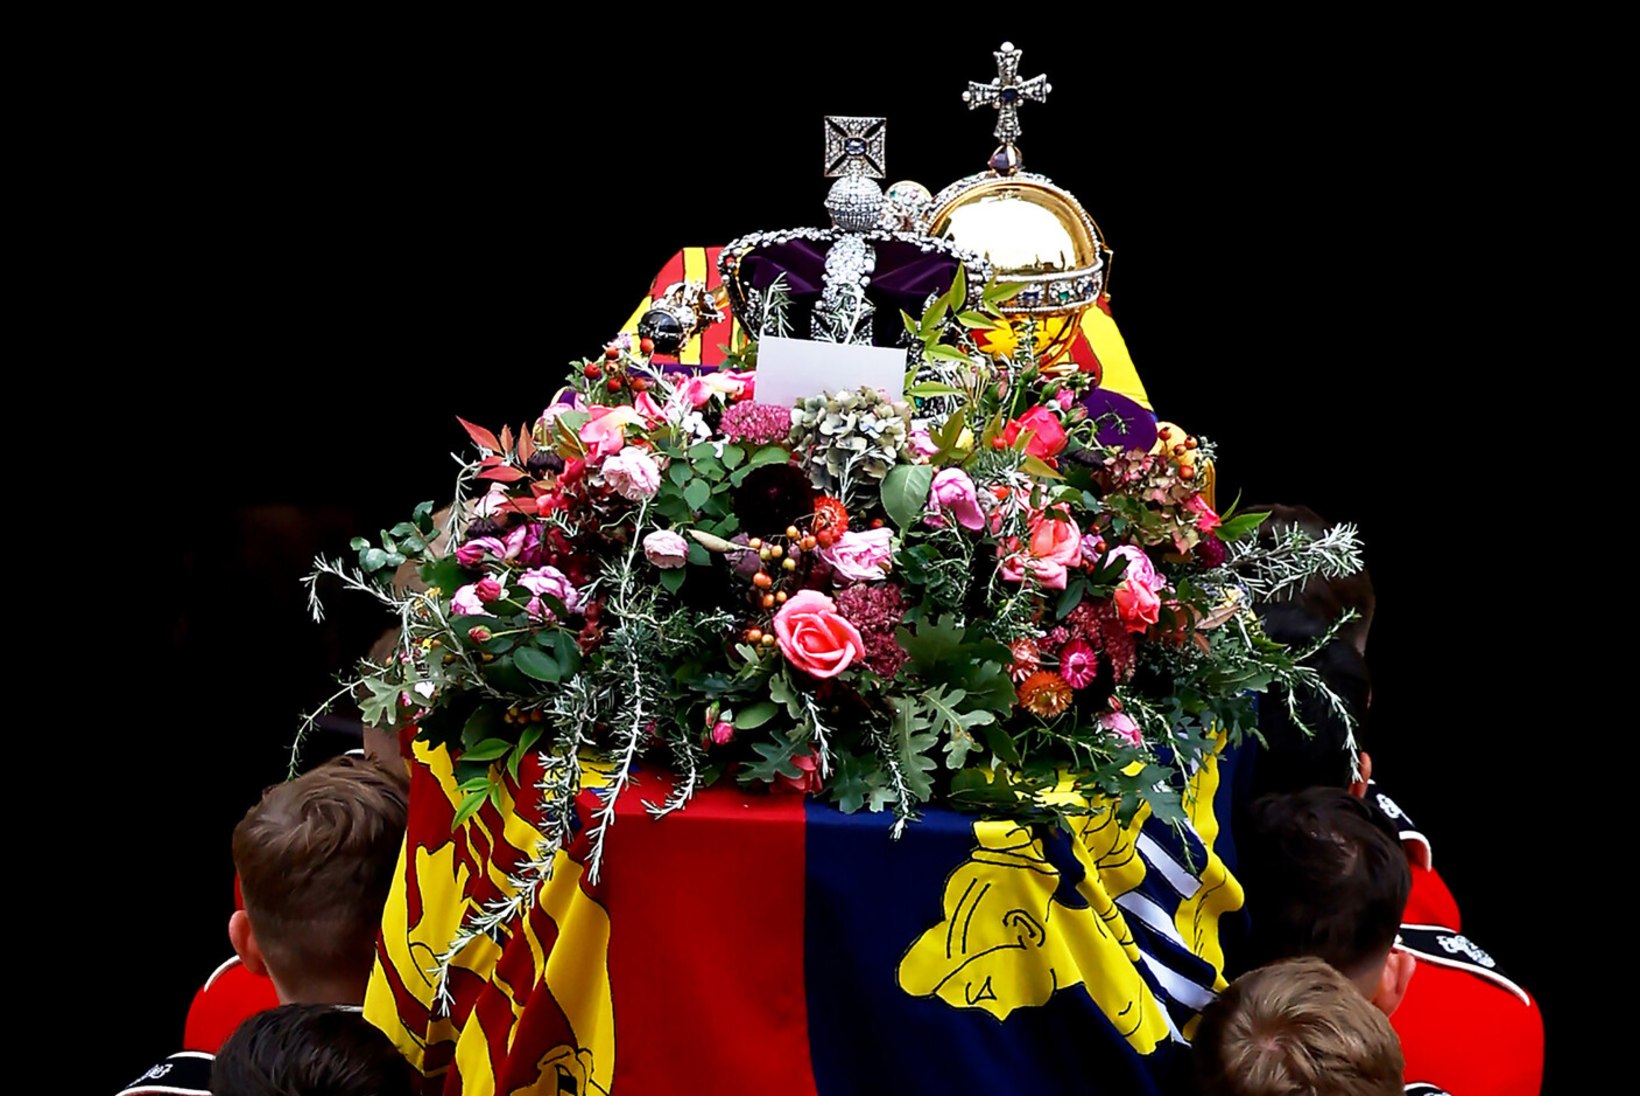 PALJASTUS: kuninganna kroon ja kroonijuveelid olid kirstu külge kruvitud, et ei korduks tema vanaisa matuste pahaendeline fopaa